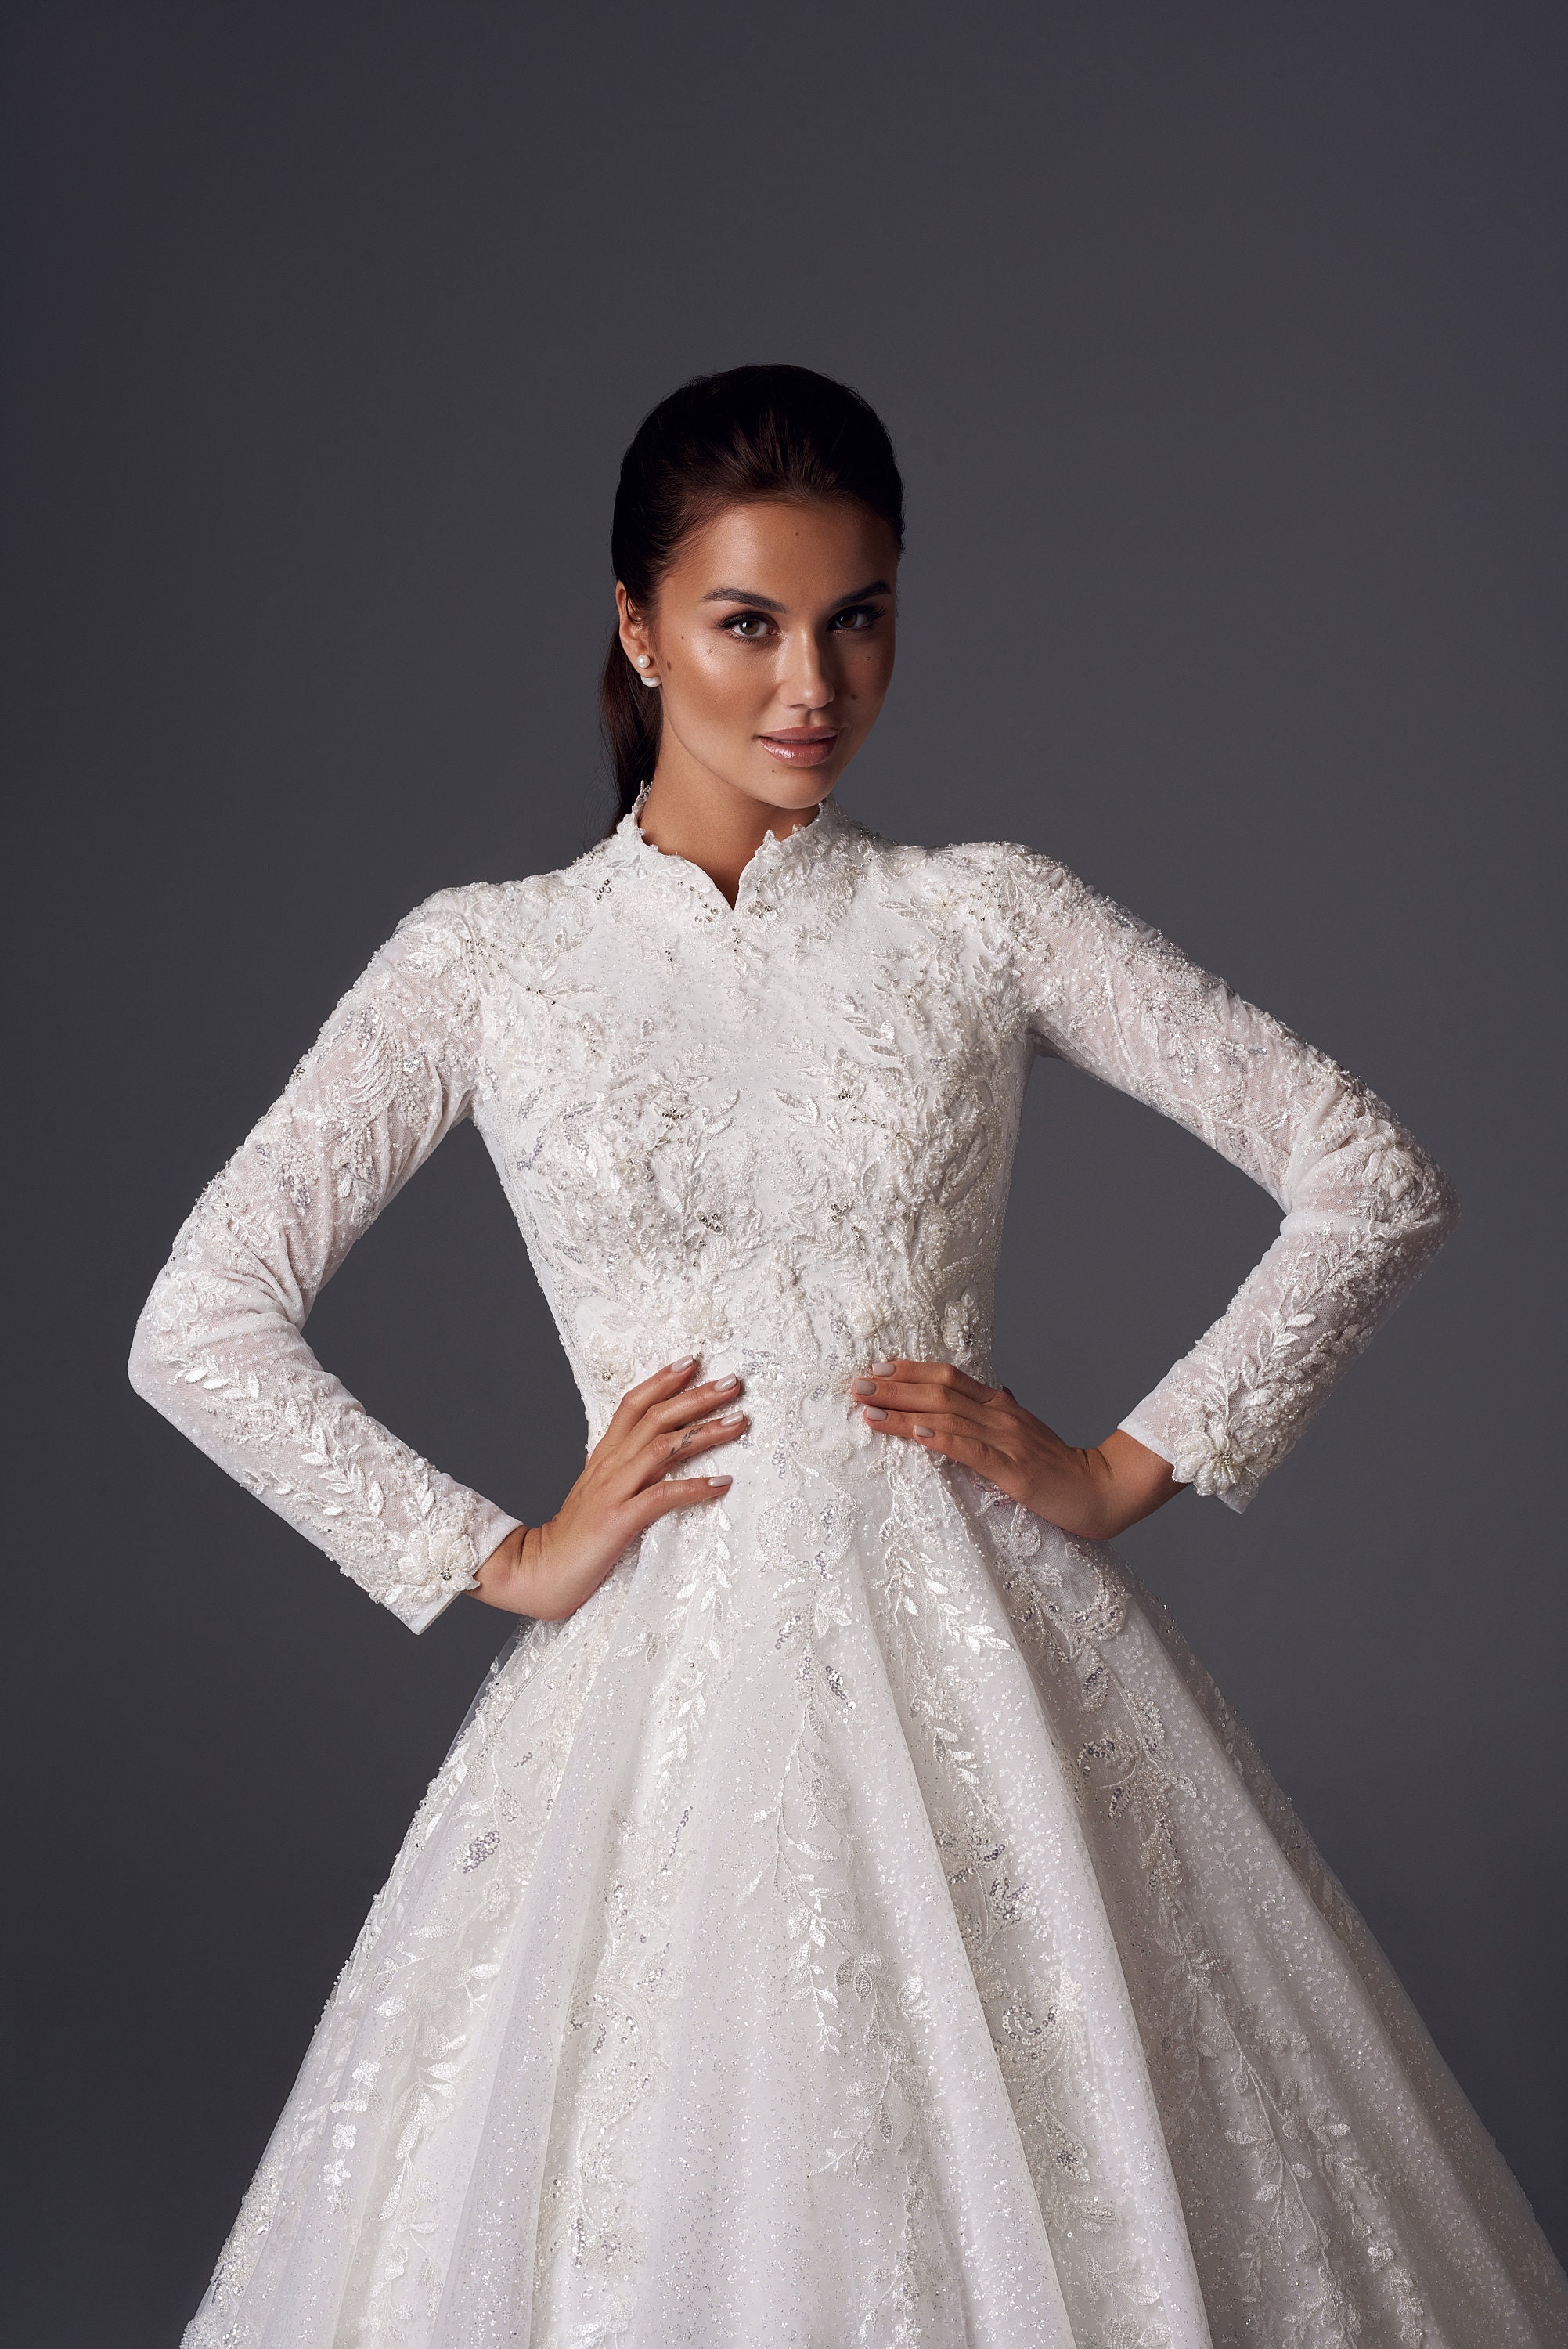 Plunging Neckline Embellished Dress AG0104 – Sparkly Gowns